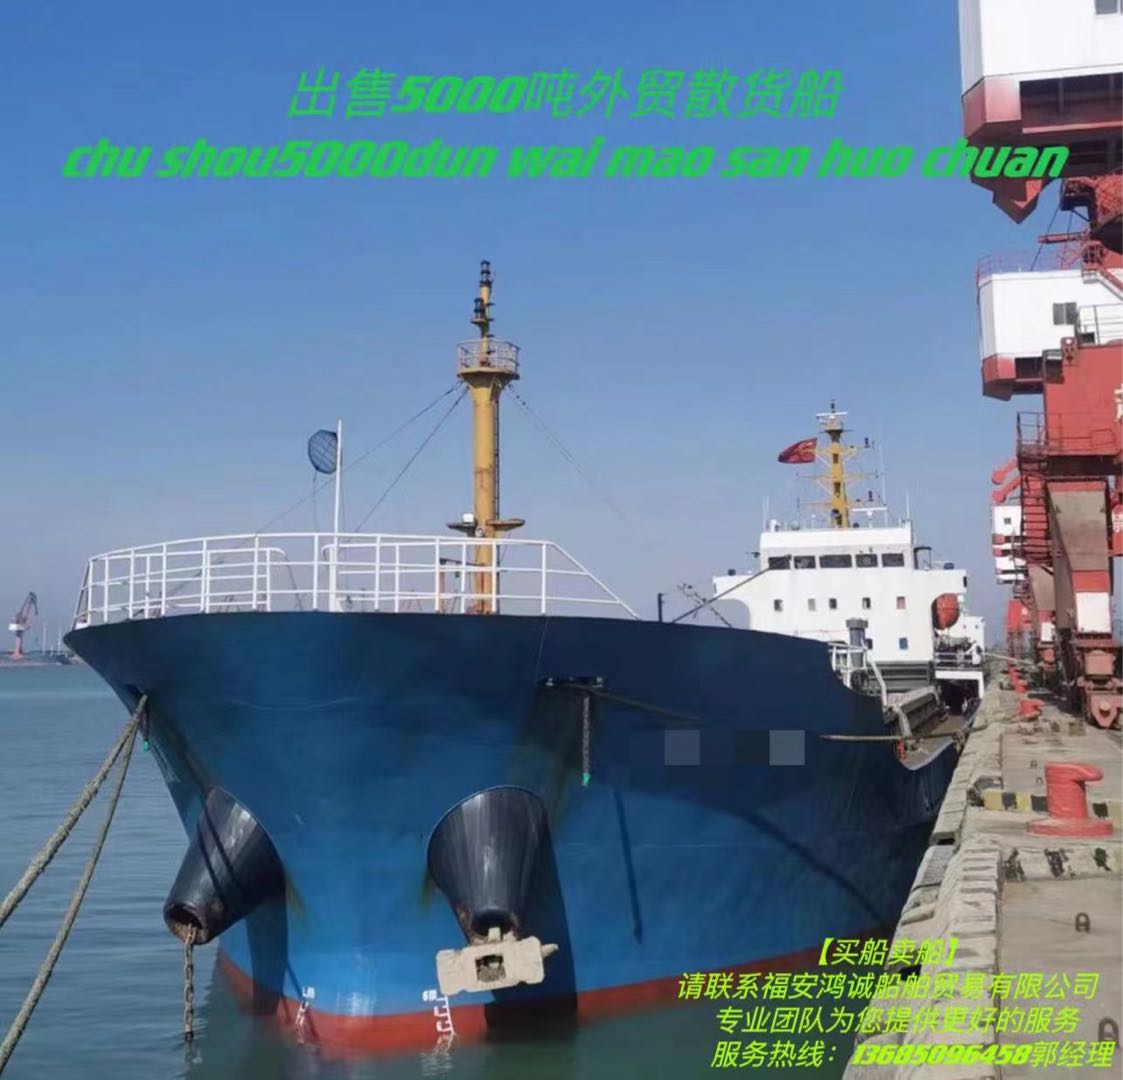 出卖《三艘》5000吨正在航中贸集货船 祸建 宁德市-2.jpg